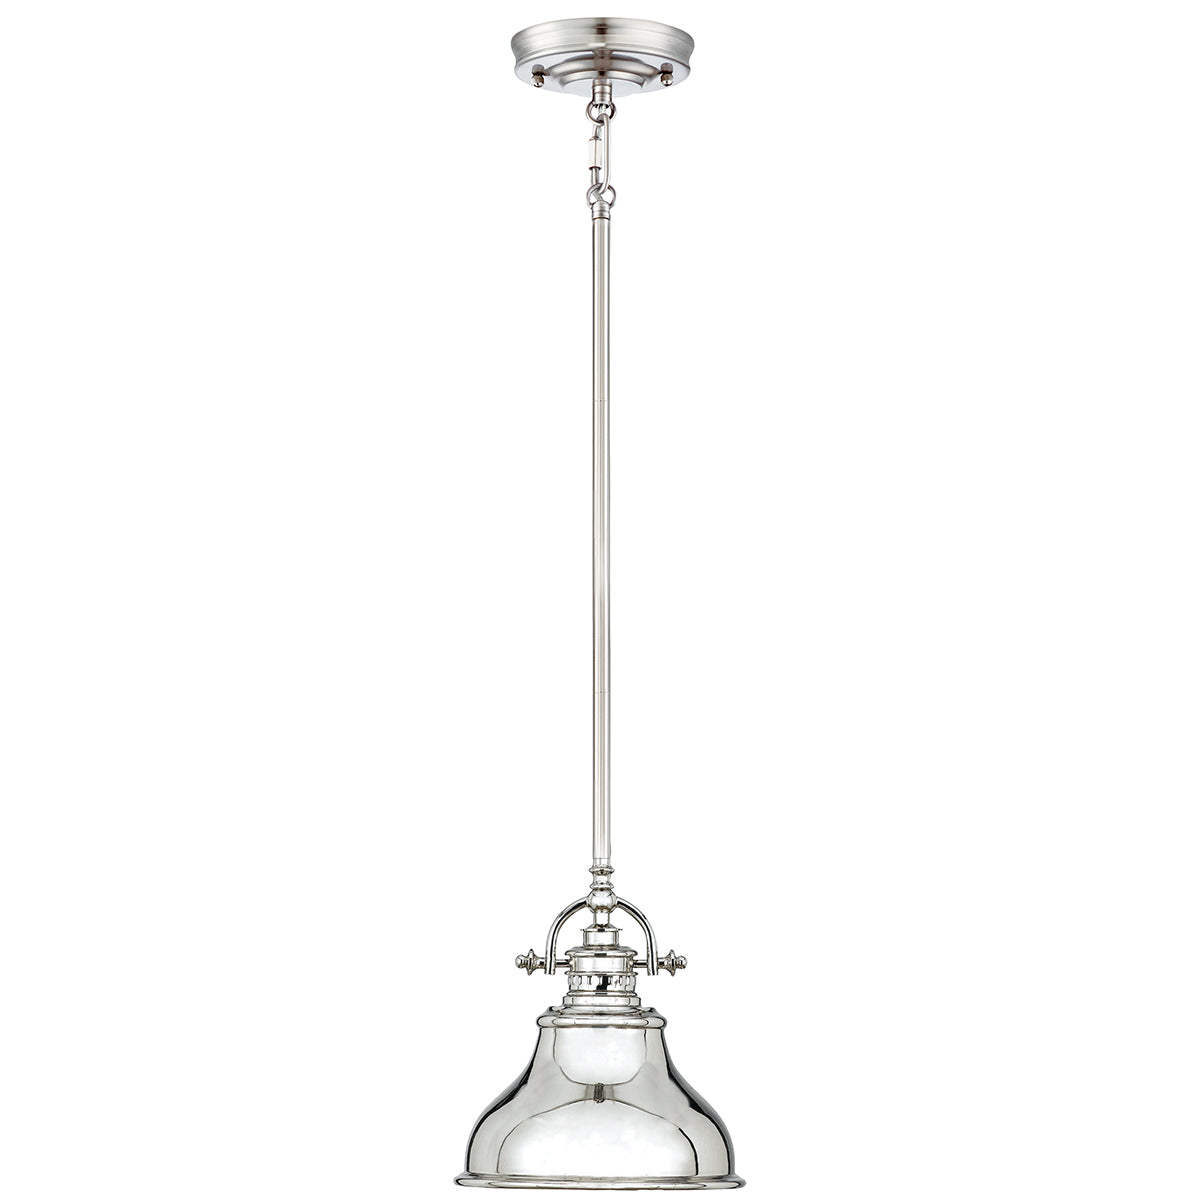 ePlafoniera - Industrialna lampa wisząca ze srebrem Emery 20cm - Quoizel